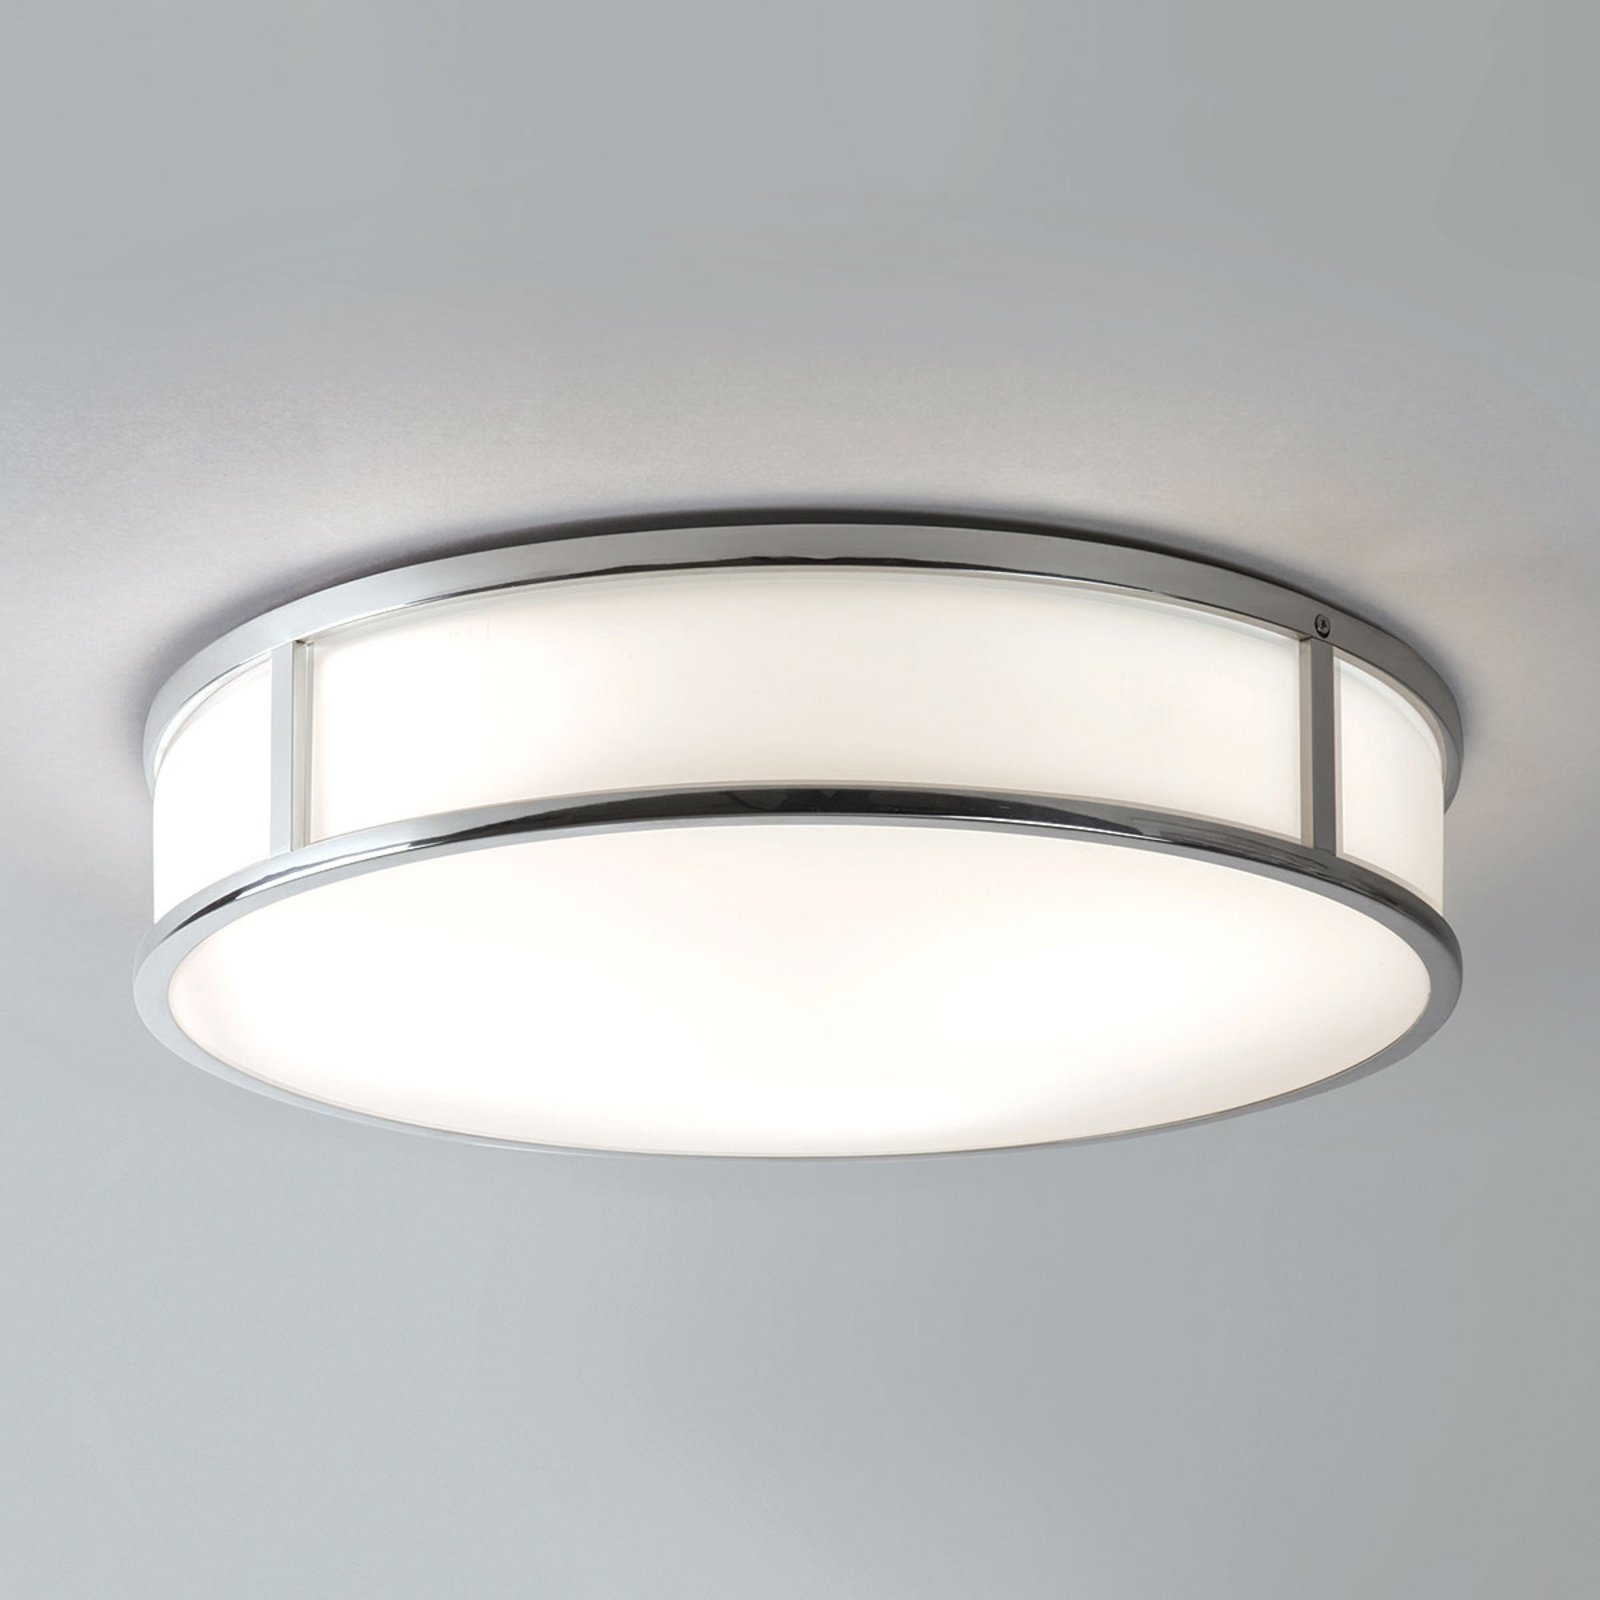 Astro Mashiko Round ceiling light Ø 40 cm chrome